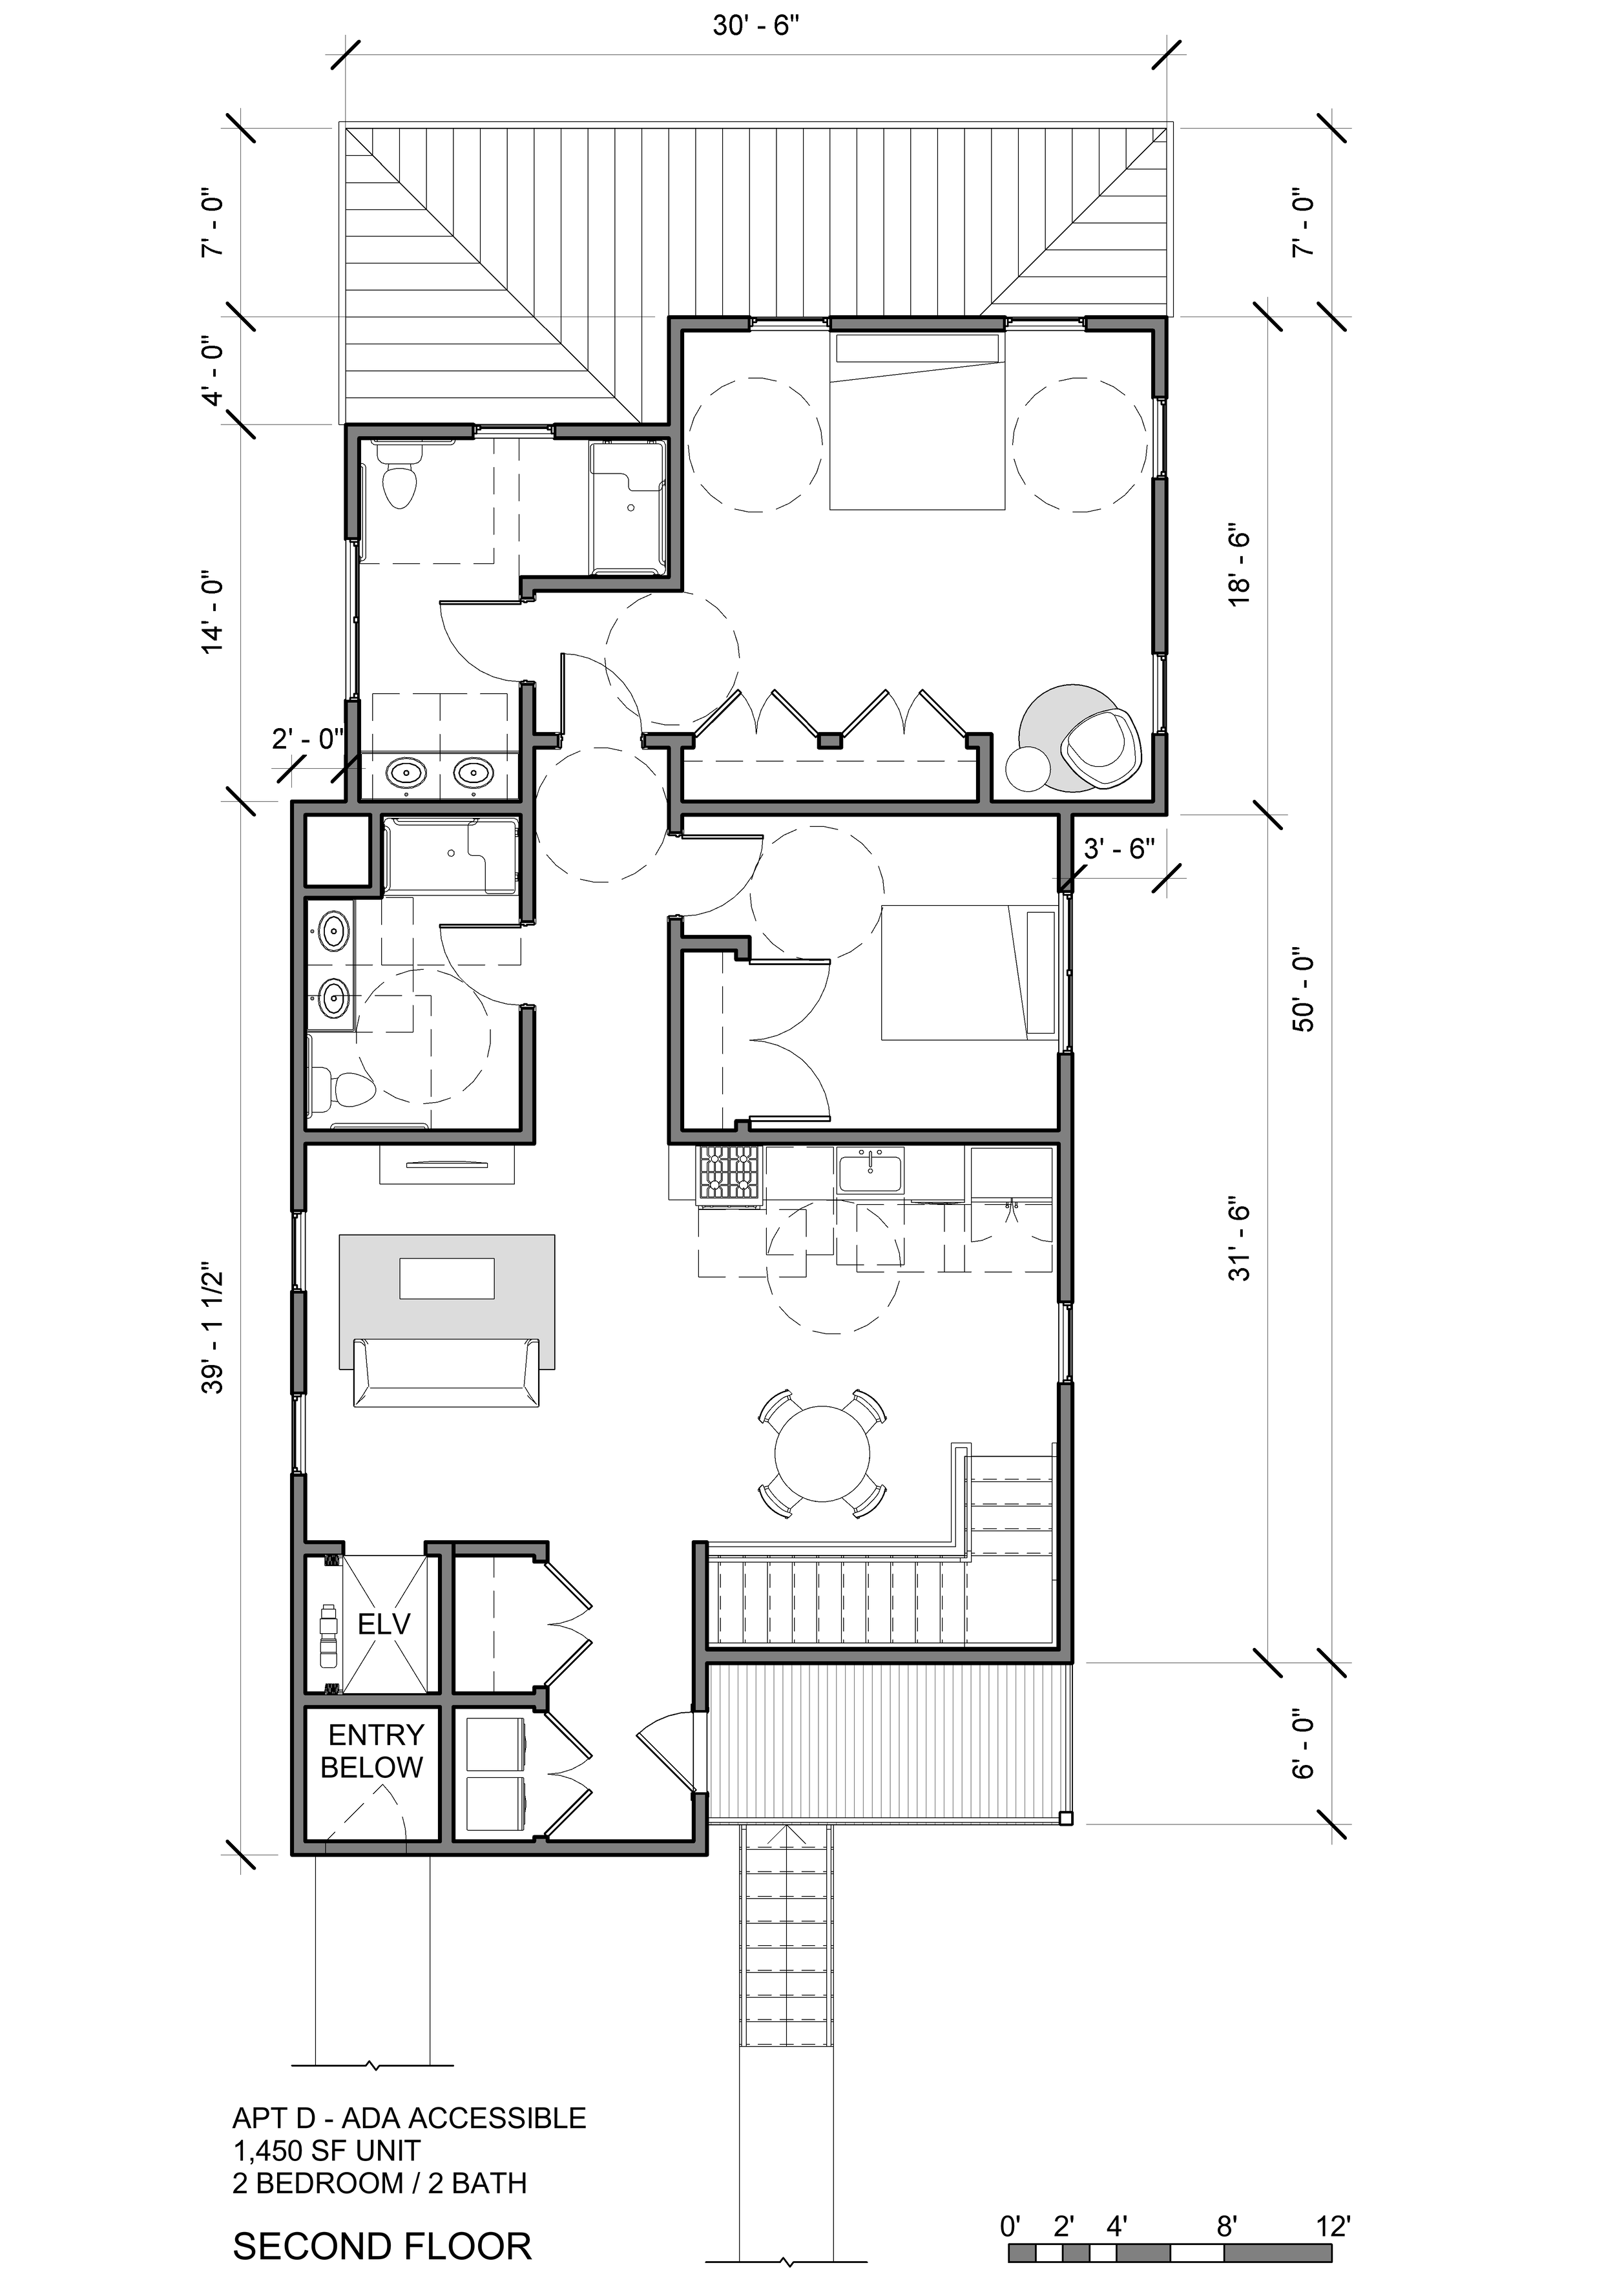 2021-05-09 BRILC Concept Plans - Floor Plan - PATTERSON AVE - SECOND FLOOR - SCHEMATIC.png